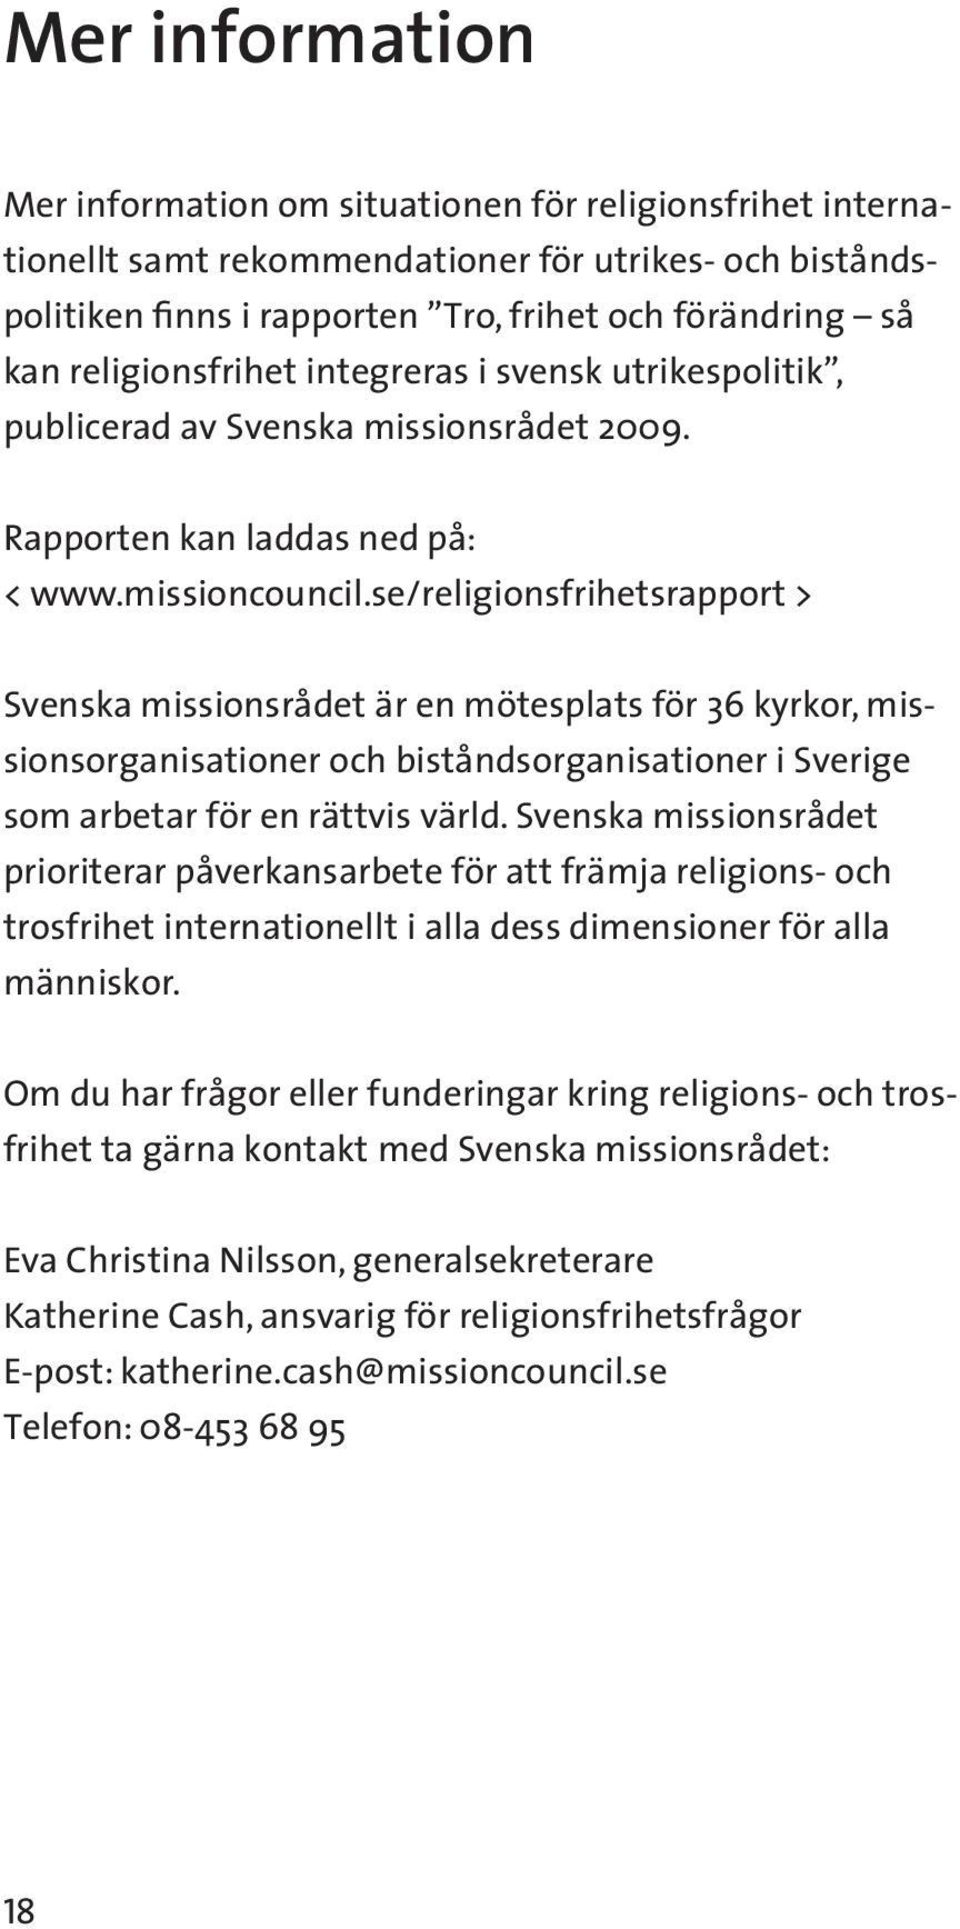 se/religionsfrihetsrapport > Svenska missionsrådet är en mötesplats för 36 kyrkor, missionsorganisationer och biståndsorganisationer i Sverige som arbetar för en rättvis värld.